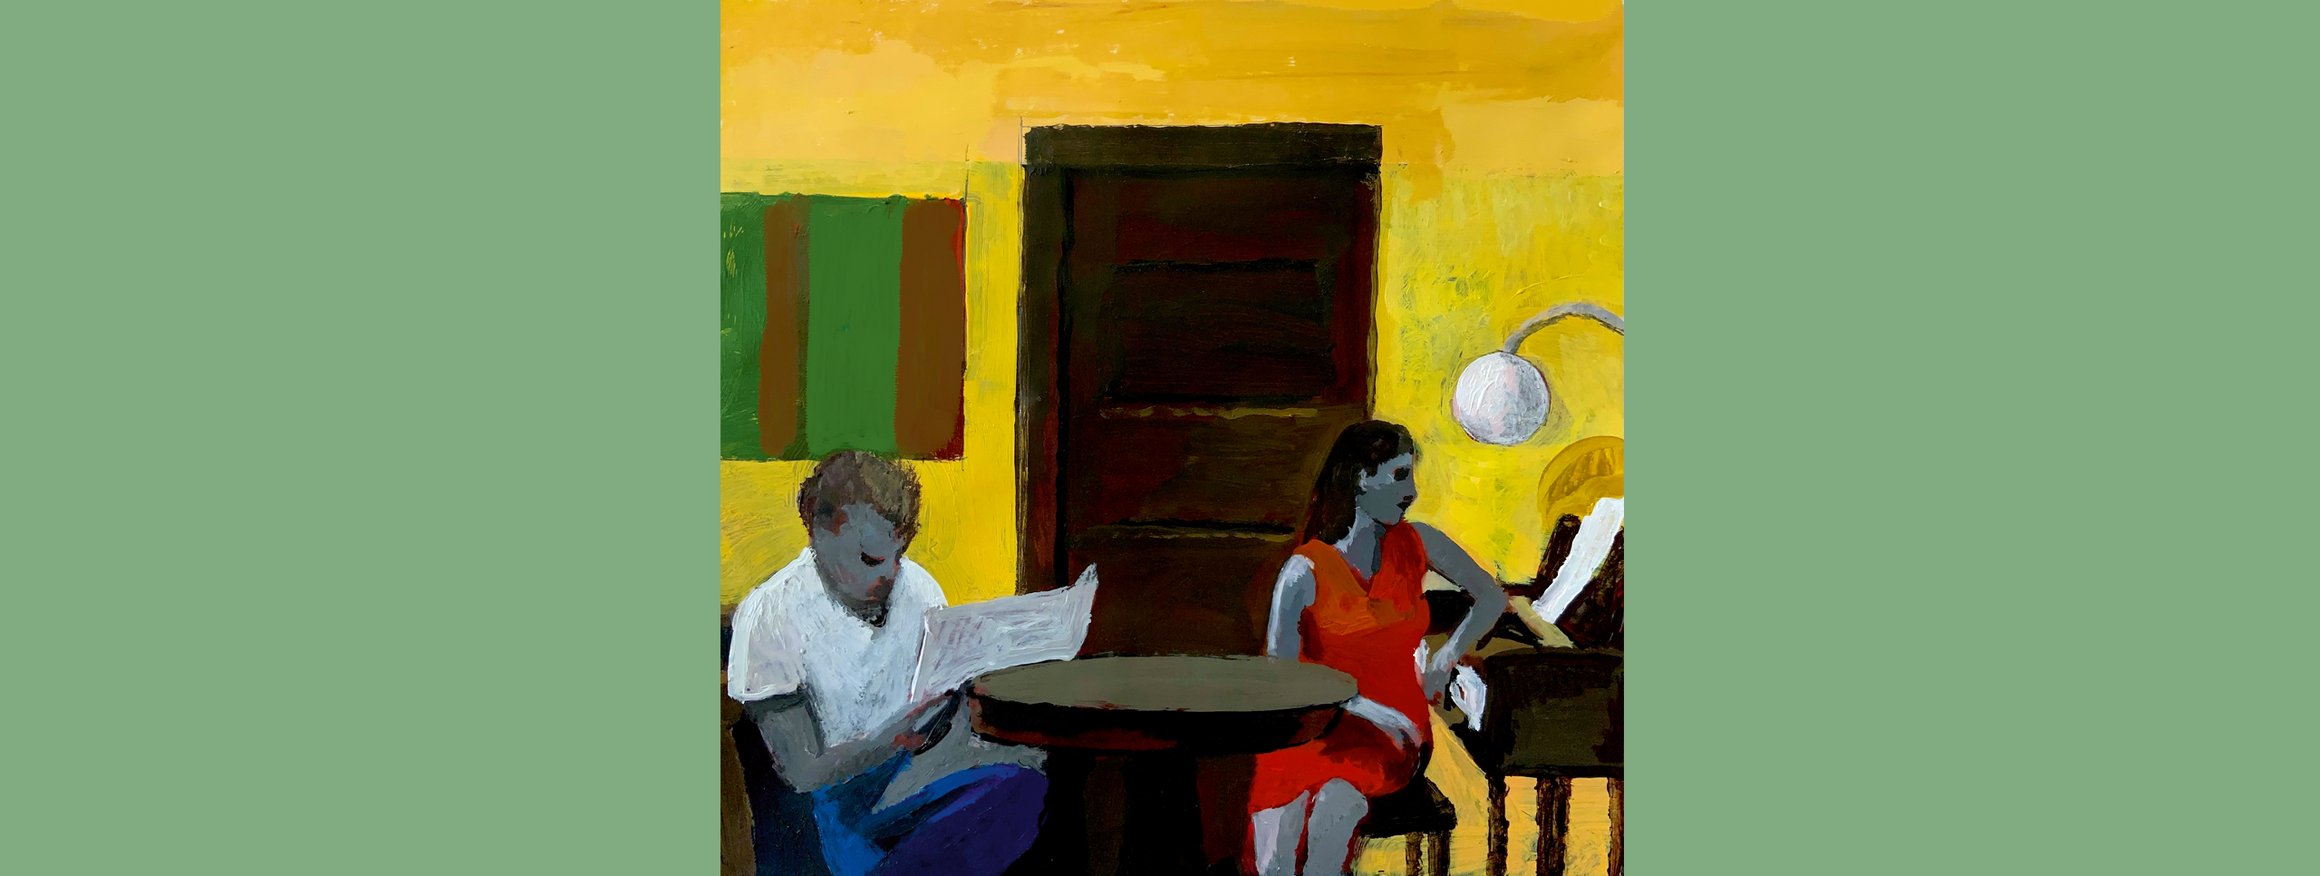 Die Illustration zeigt ein Mann, der eine Zeitung liest und eine Frau, die gegenübersitzt und auf ein Klavier schaut